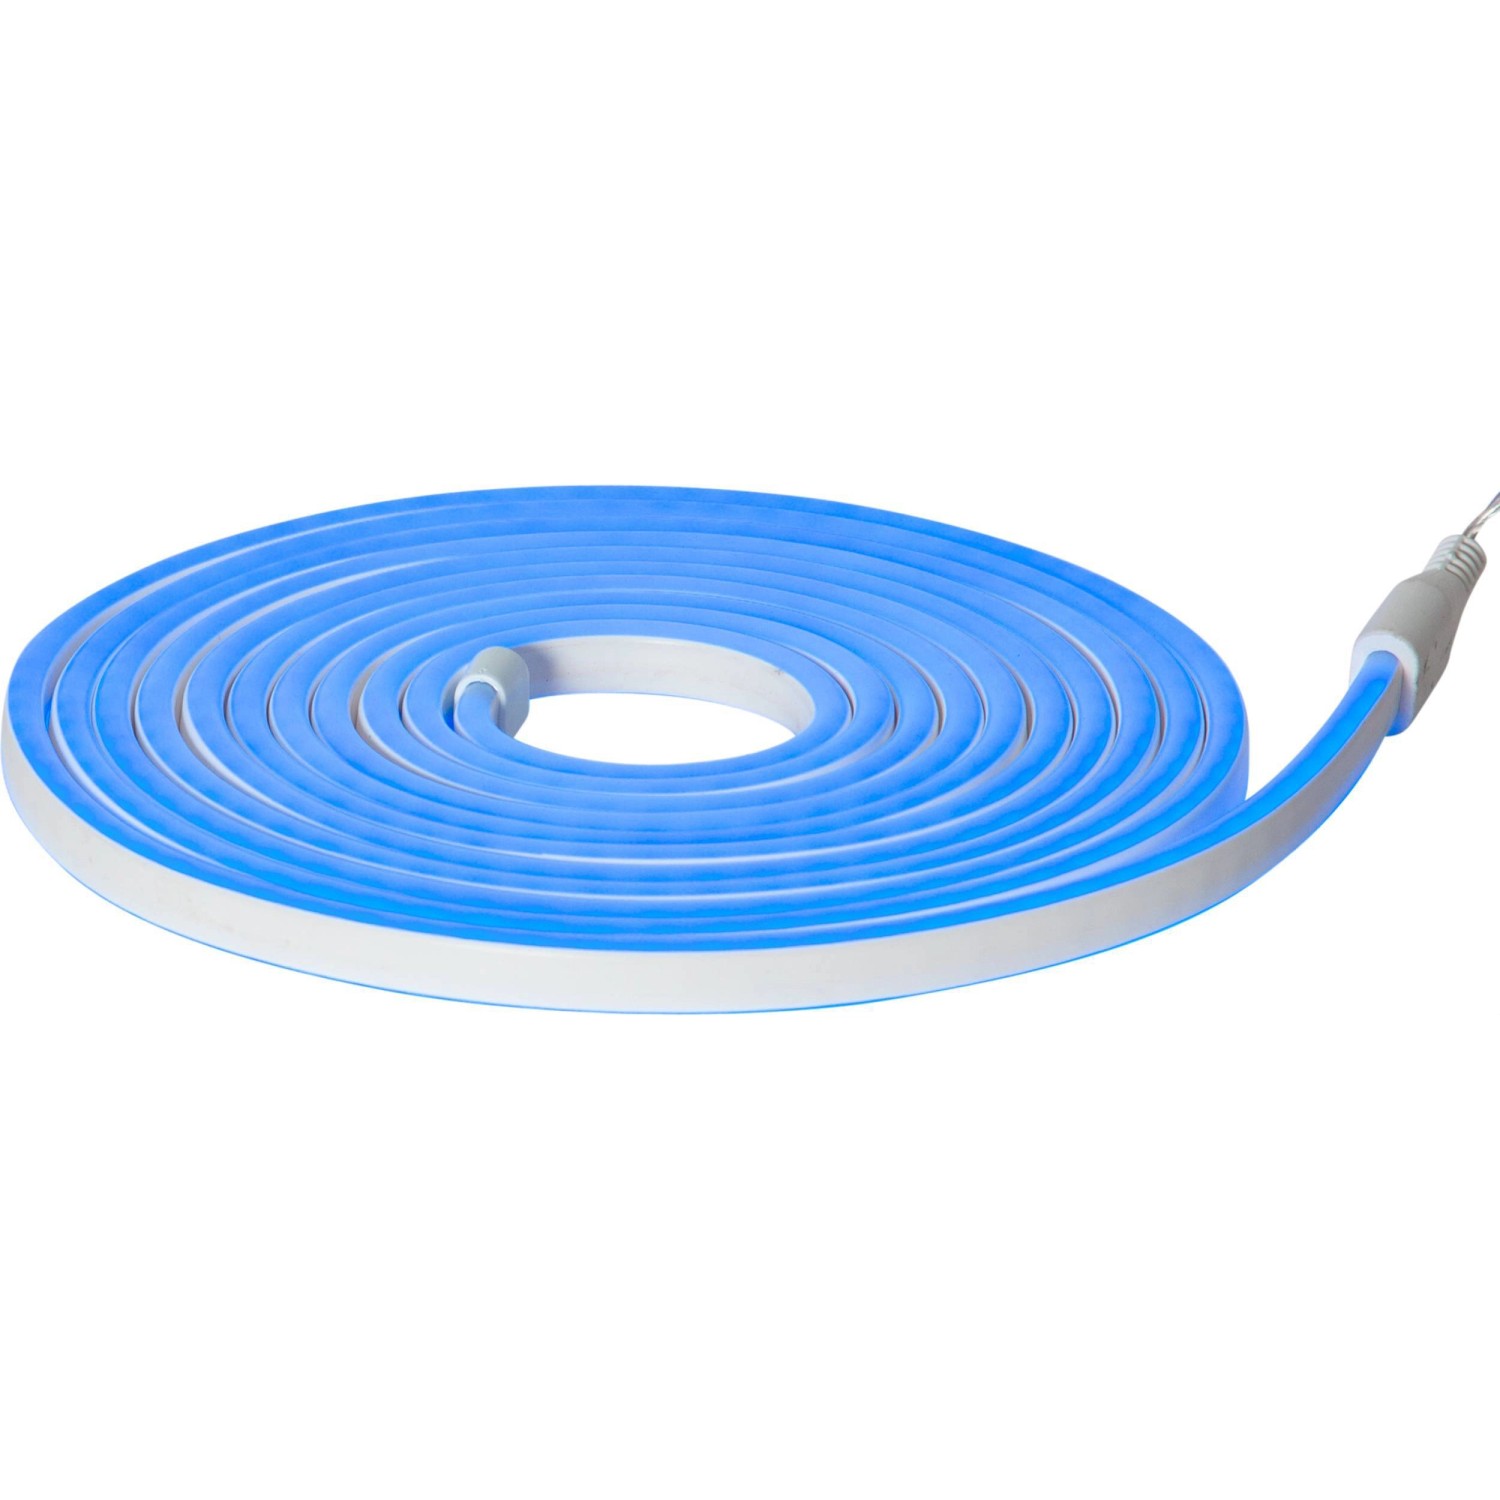 Eglo LED-Leuchtband Flatneonled Blau 500 cm